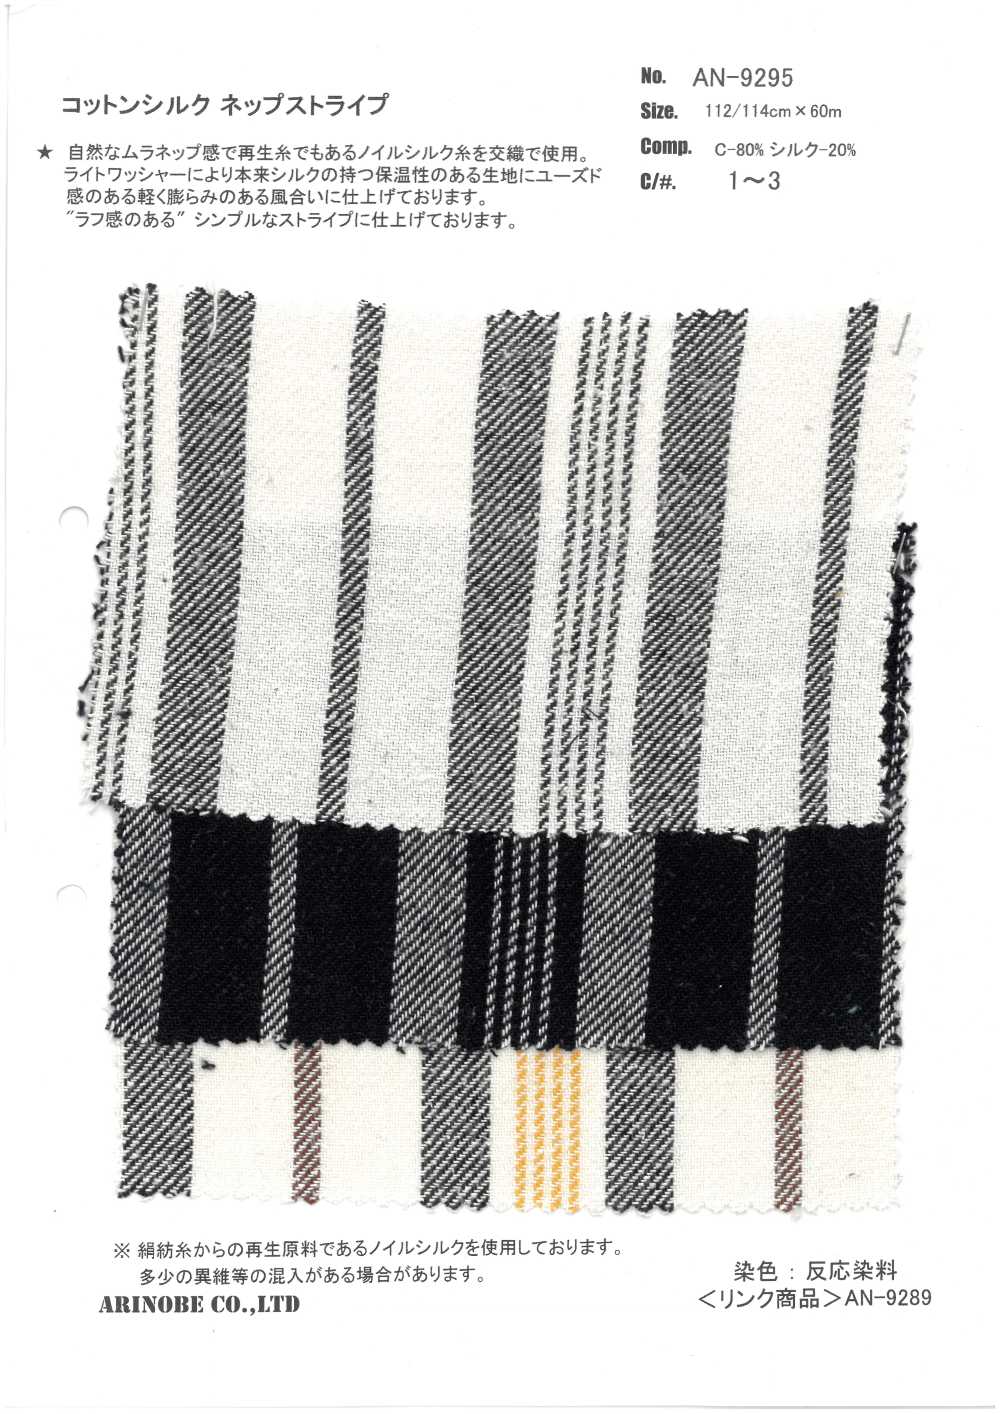 AN-9295 Baumwoll-Seiden-Nep-Streifen[Textilgewebe] ARINOBE CO., LTD.